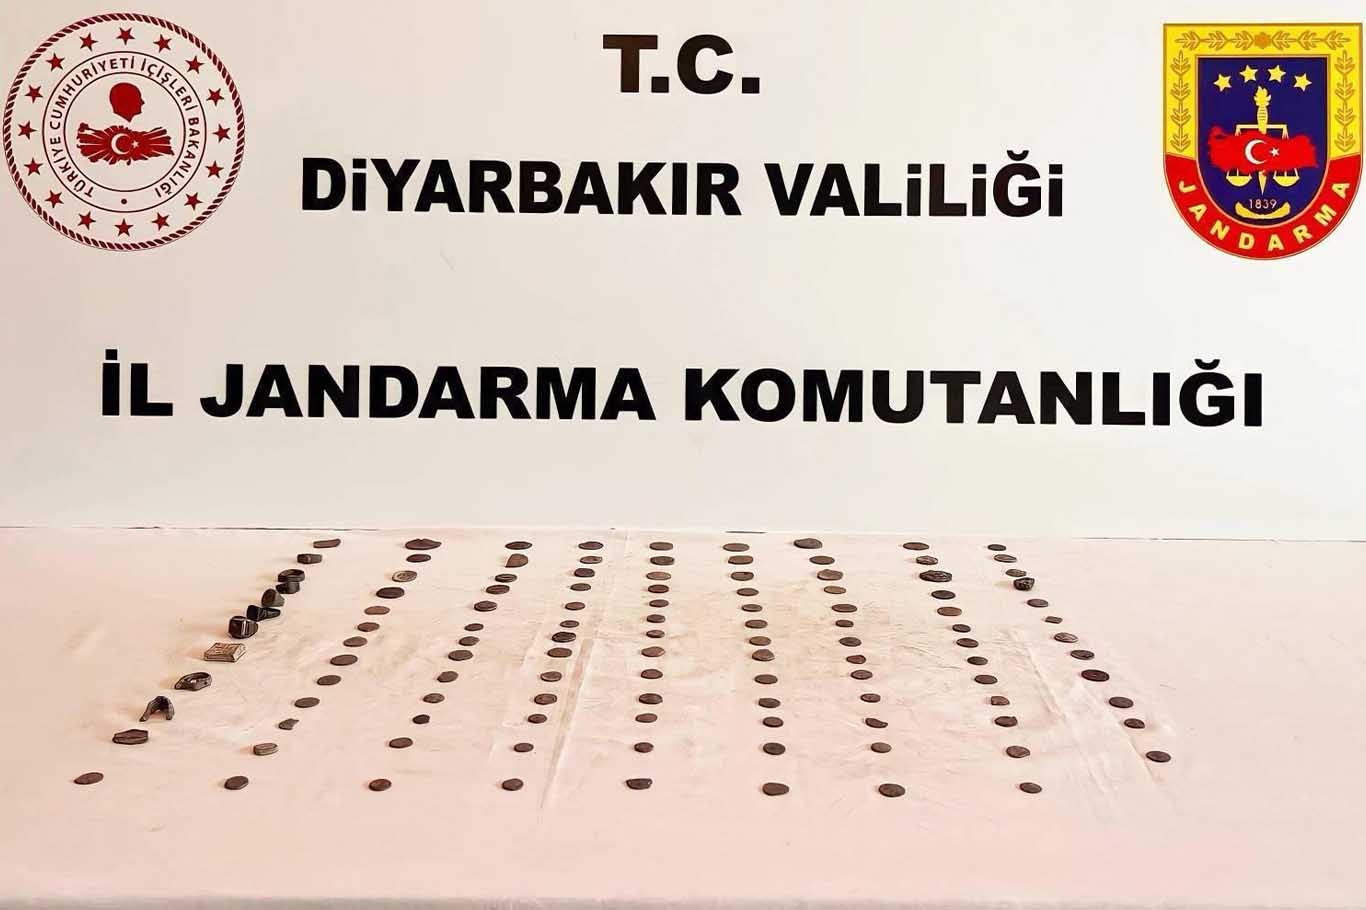 Diyarbakır’da 146 Adet Ele Geçirildi 5 Gözaltı 1